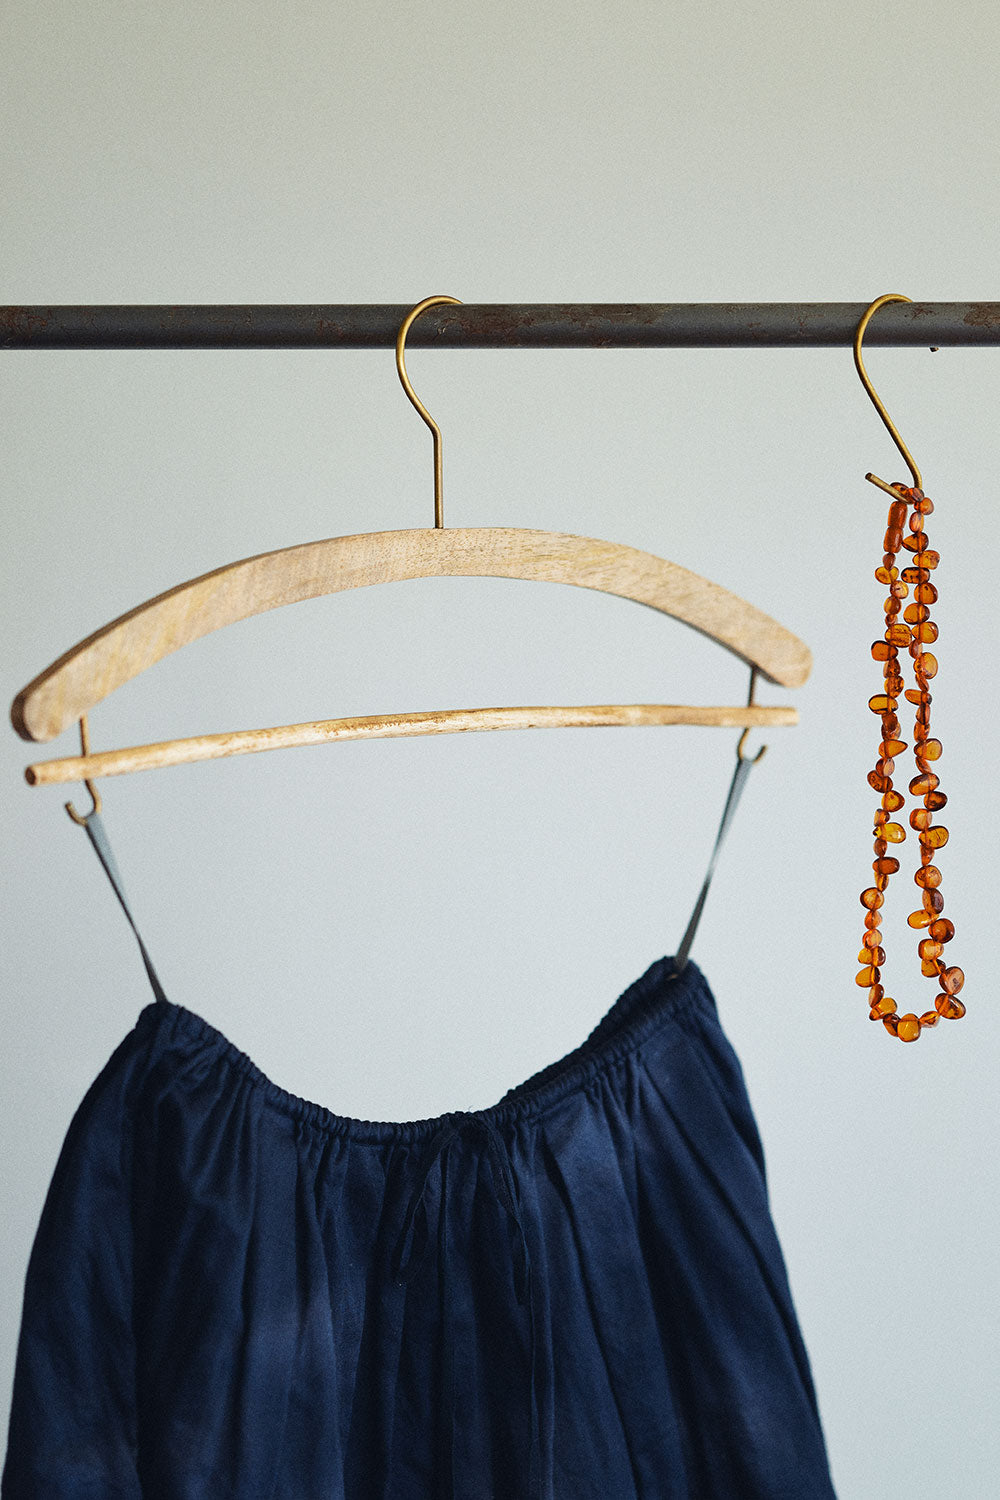 fog linen work mango wood skirt hanger